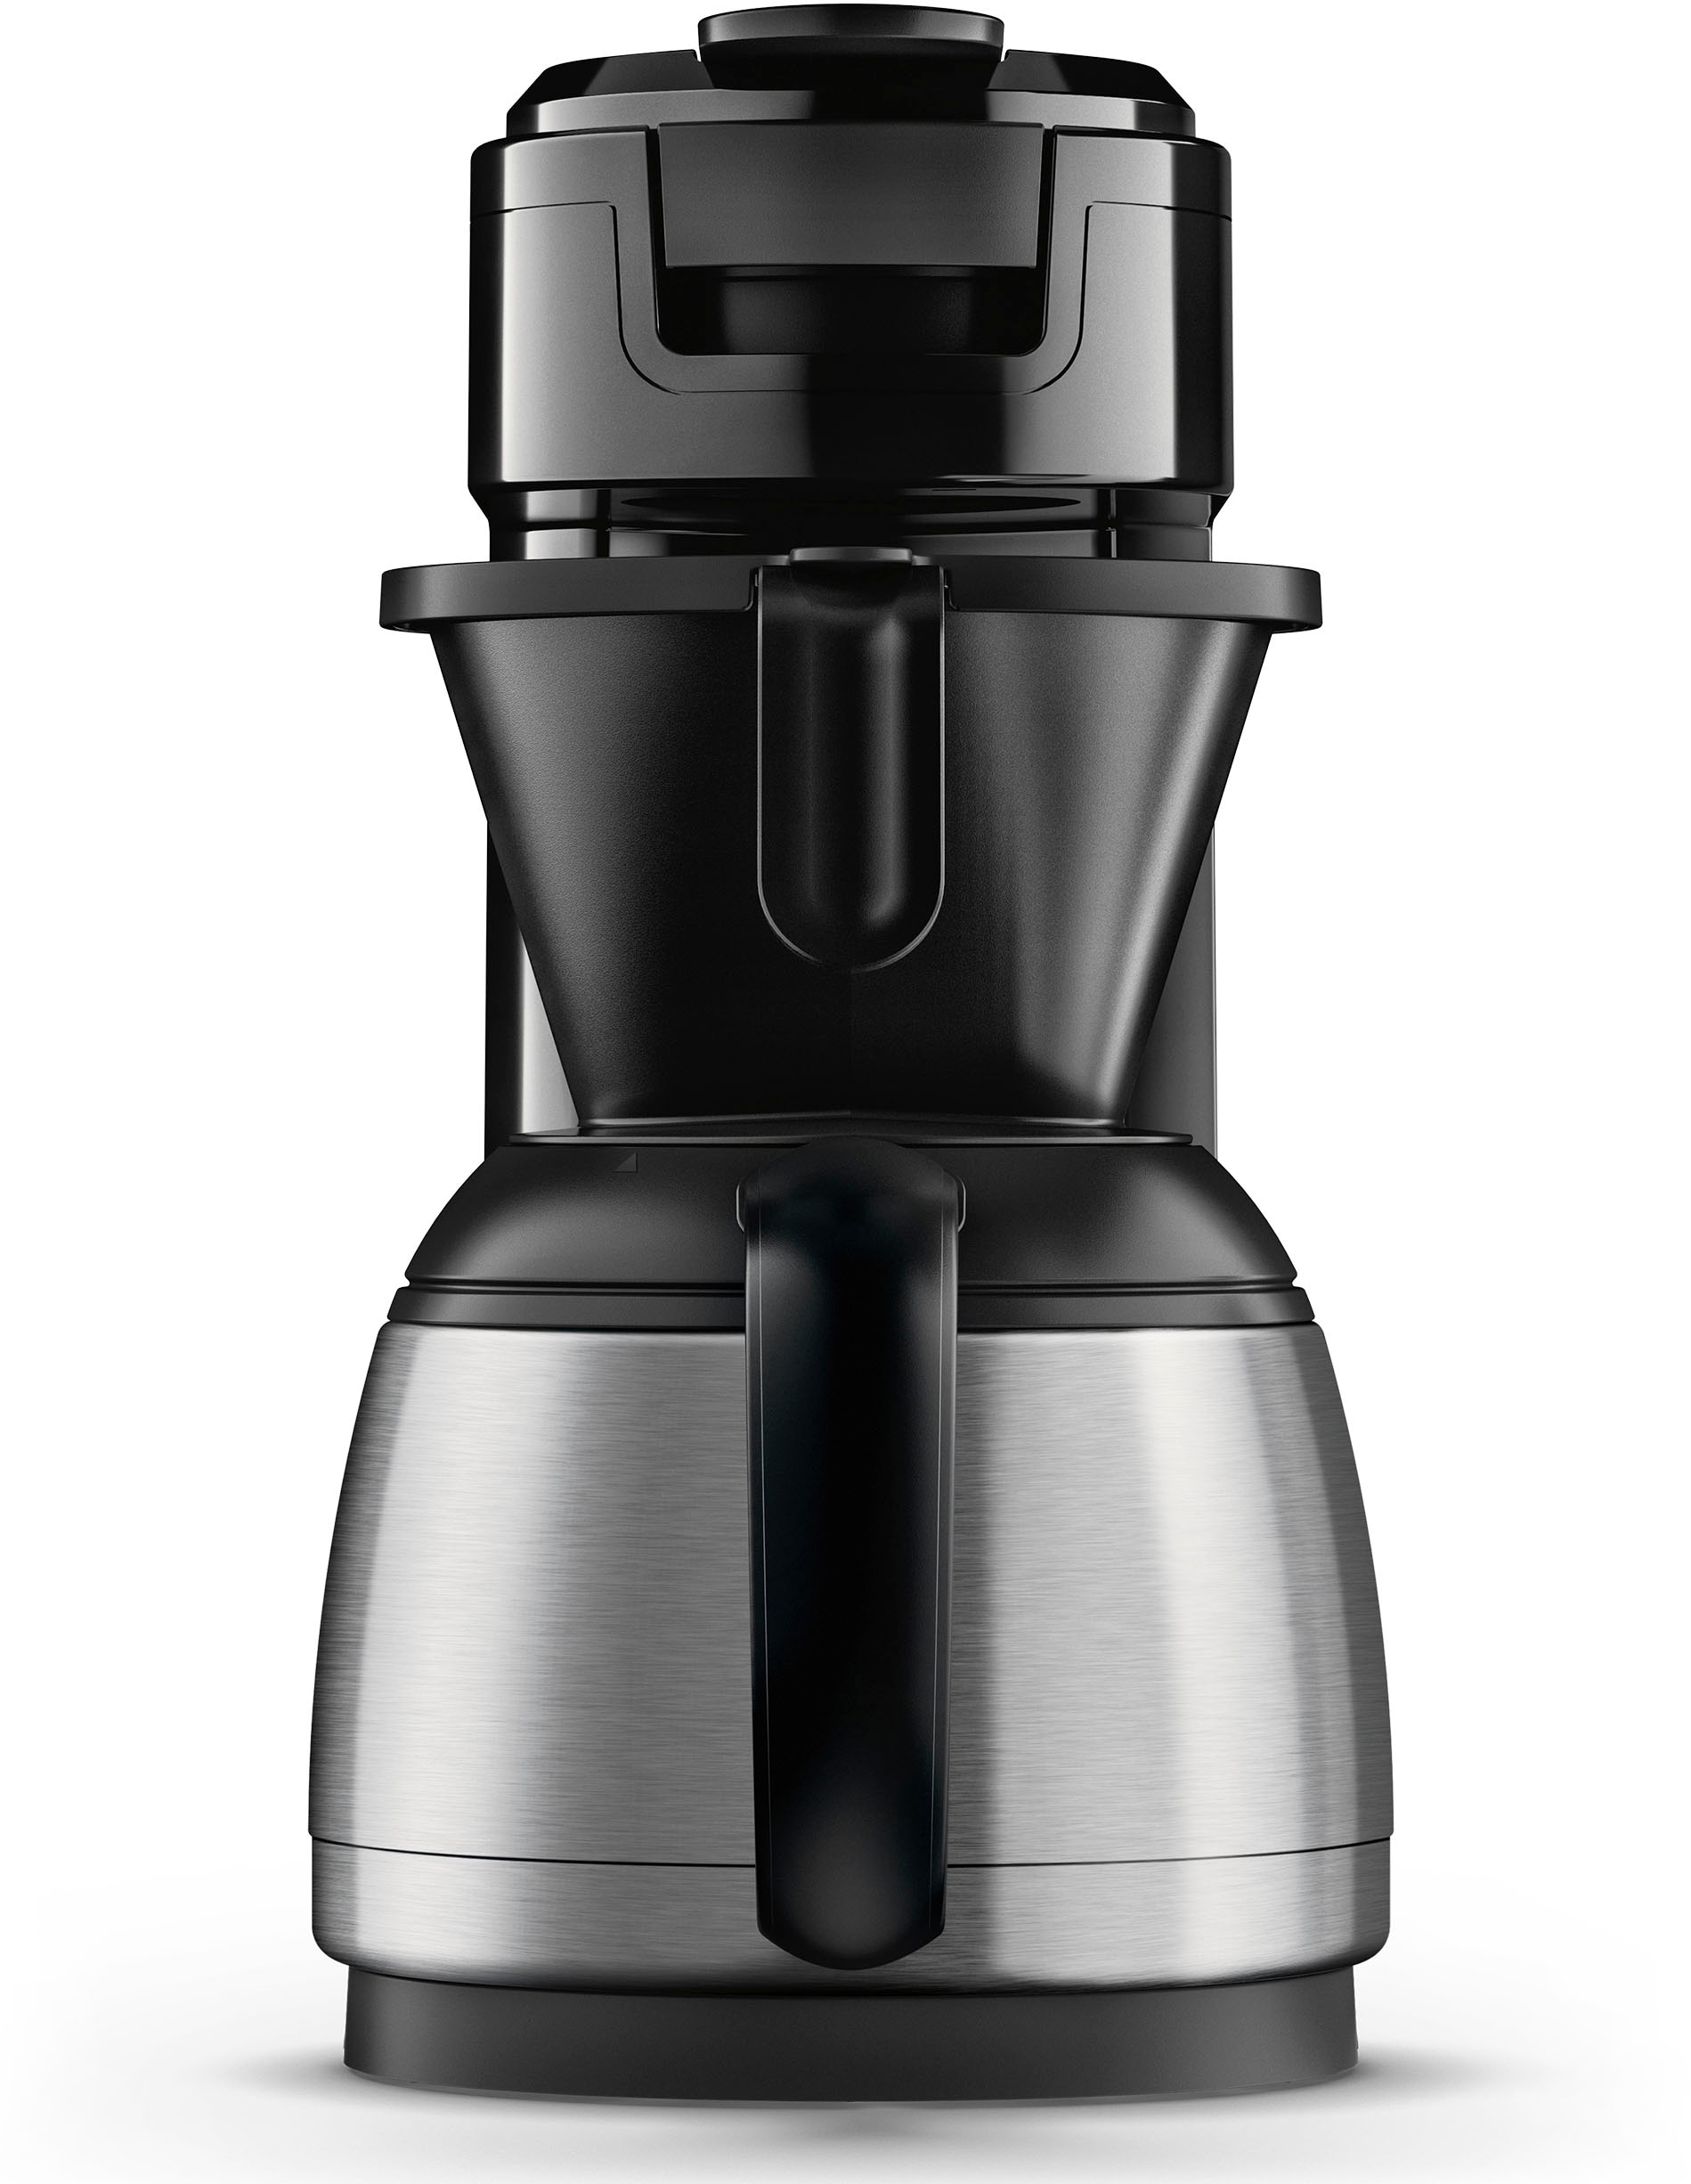 Philips Senseo Kaffeepadmaschine »Switch HD6592/64, 26% recyceltem Plastik,  Kaffee Boost Technologie«, 1 l Kaffeekanne, Crema Plus, inkl. Kaffeepaddose  Wert €9,90 UVP online bestellen